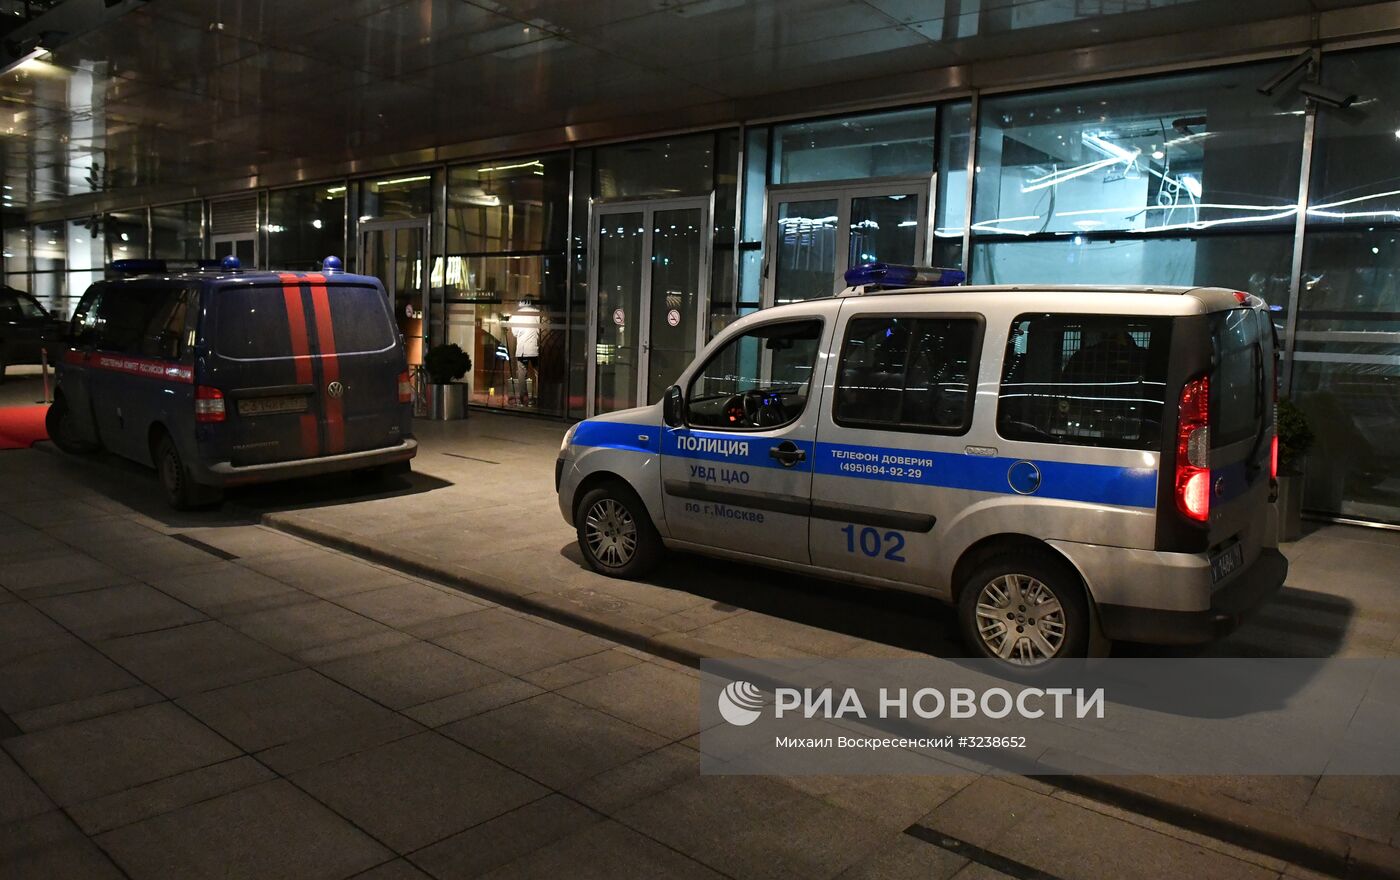 Шесть человек пострадали в результате драки со стрельбой возле комплекса "Москва-сити"